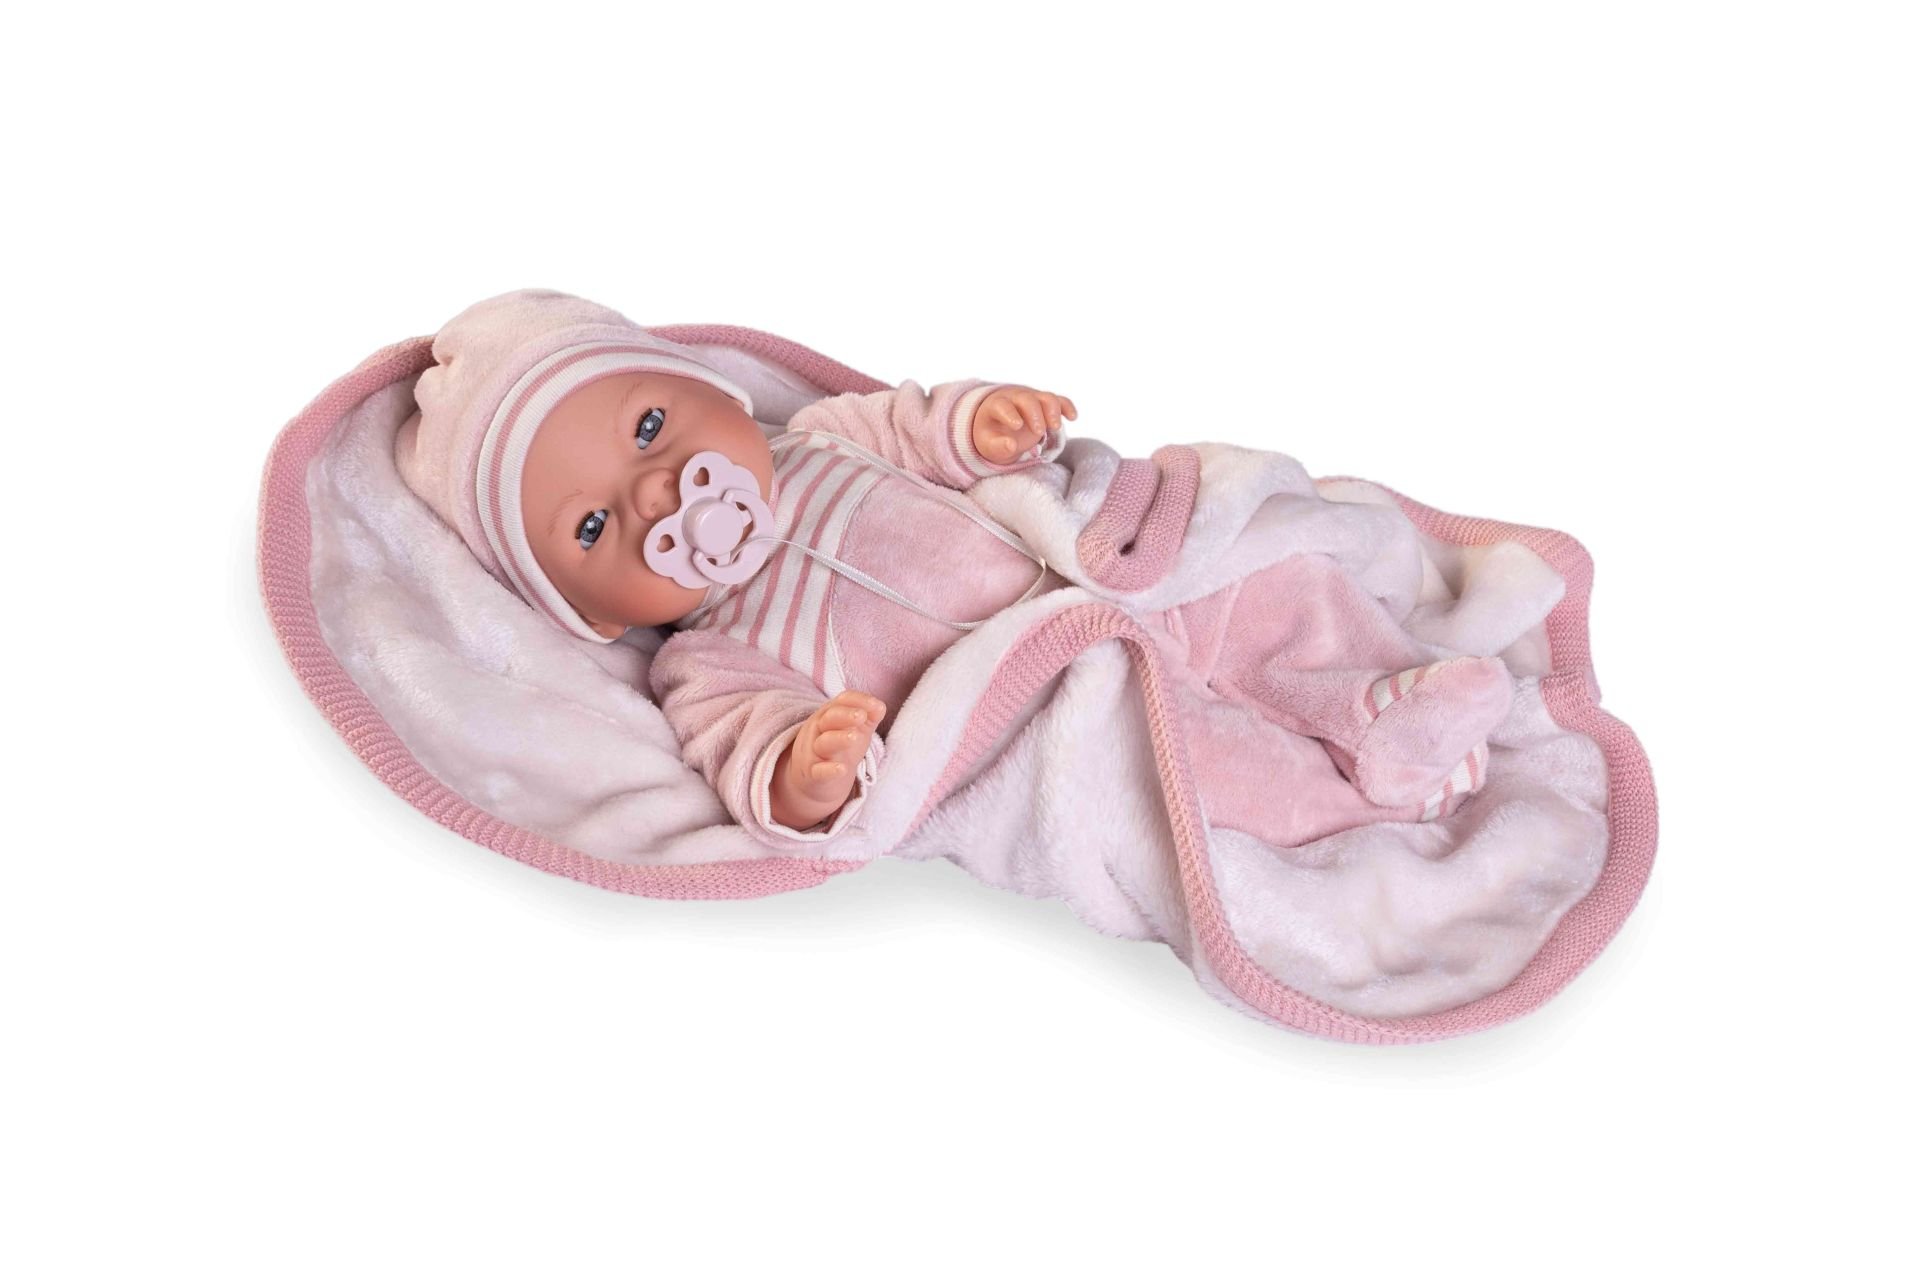 Levně Antonio Juan 14155 BIMBA - mrkací panenka miminko se zvuky a měkkým látkovým tělem - 37 cm